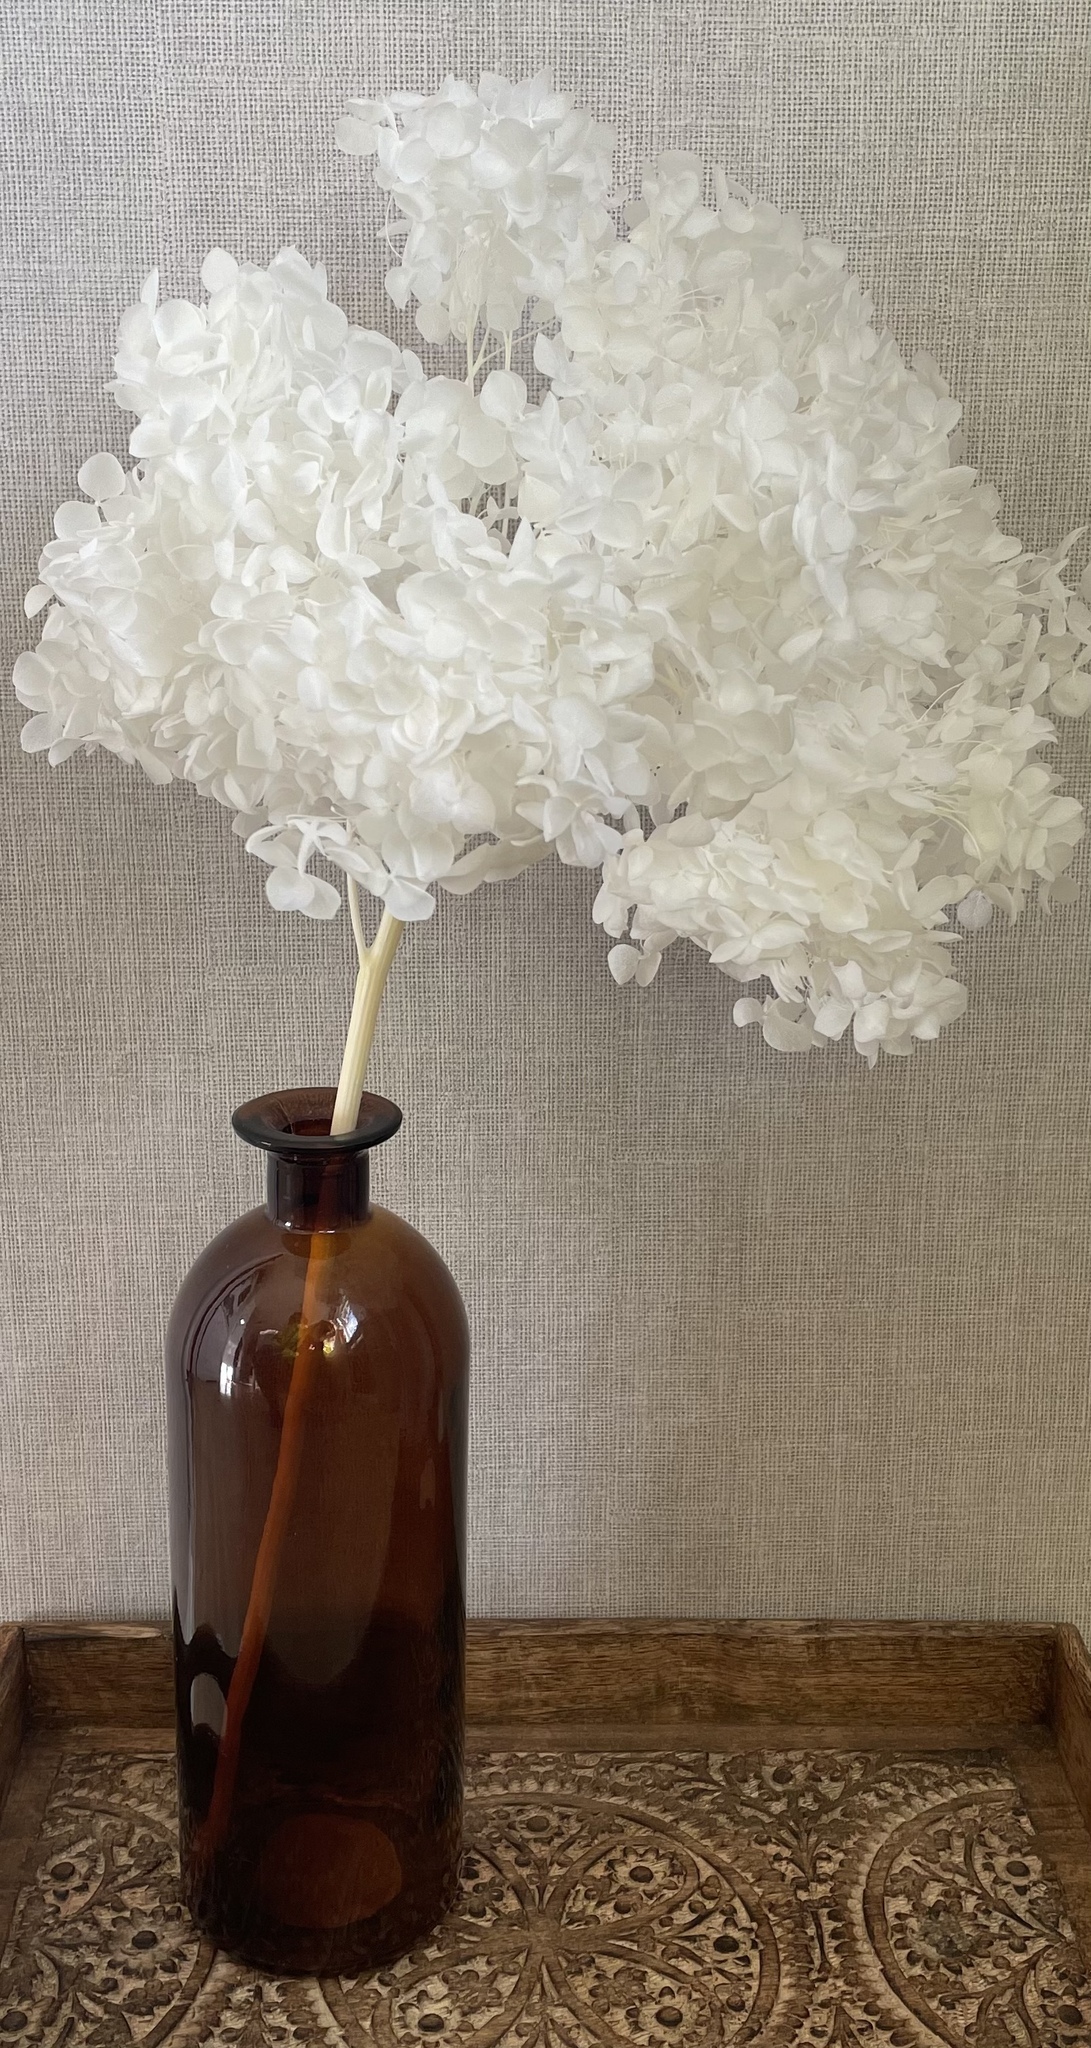 Vit hortensia - Konserverade blommor